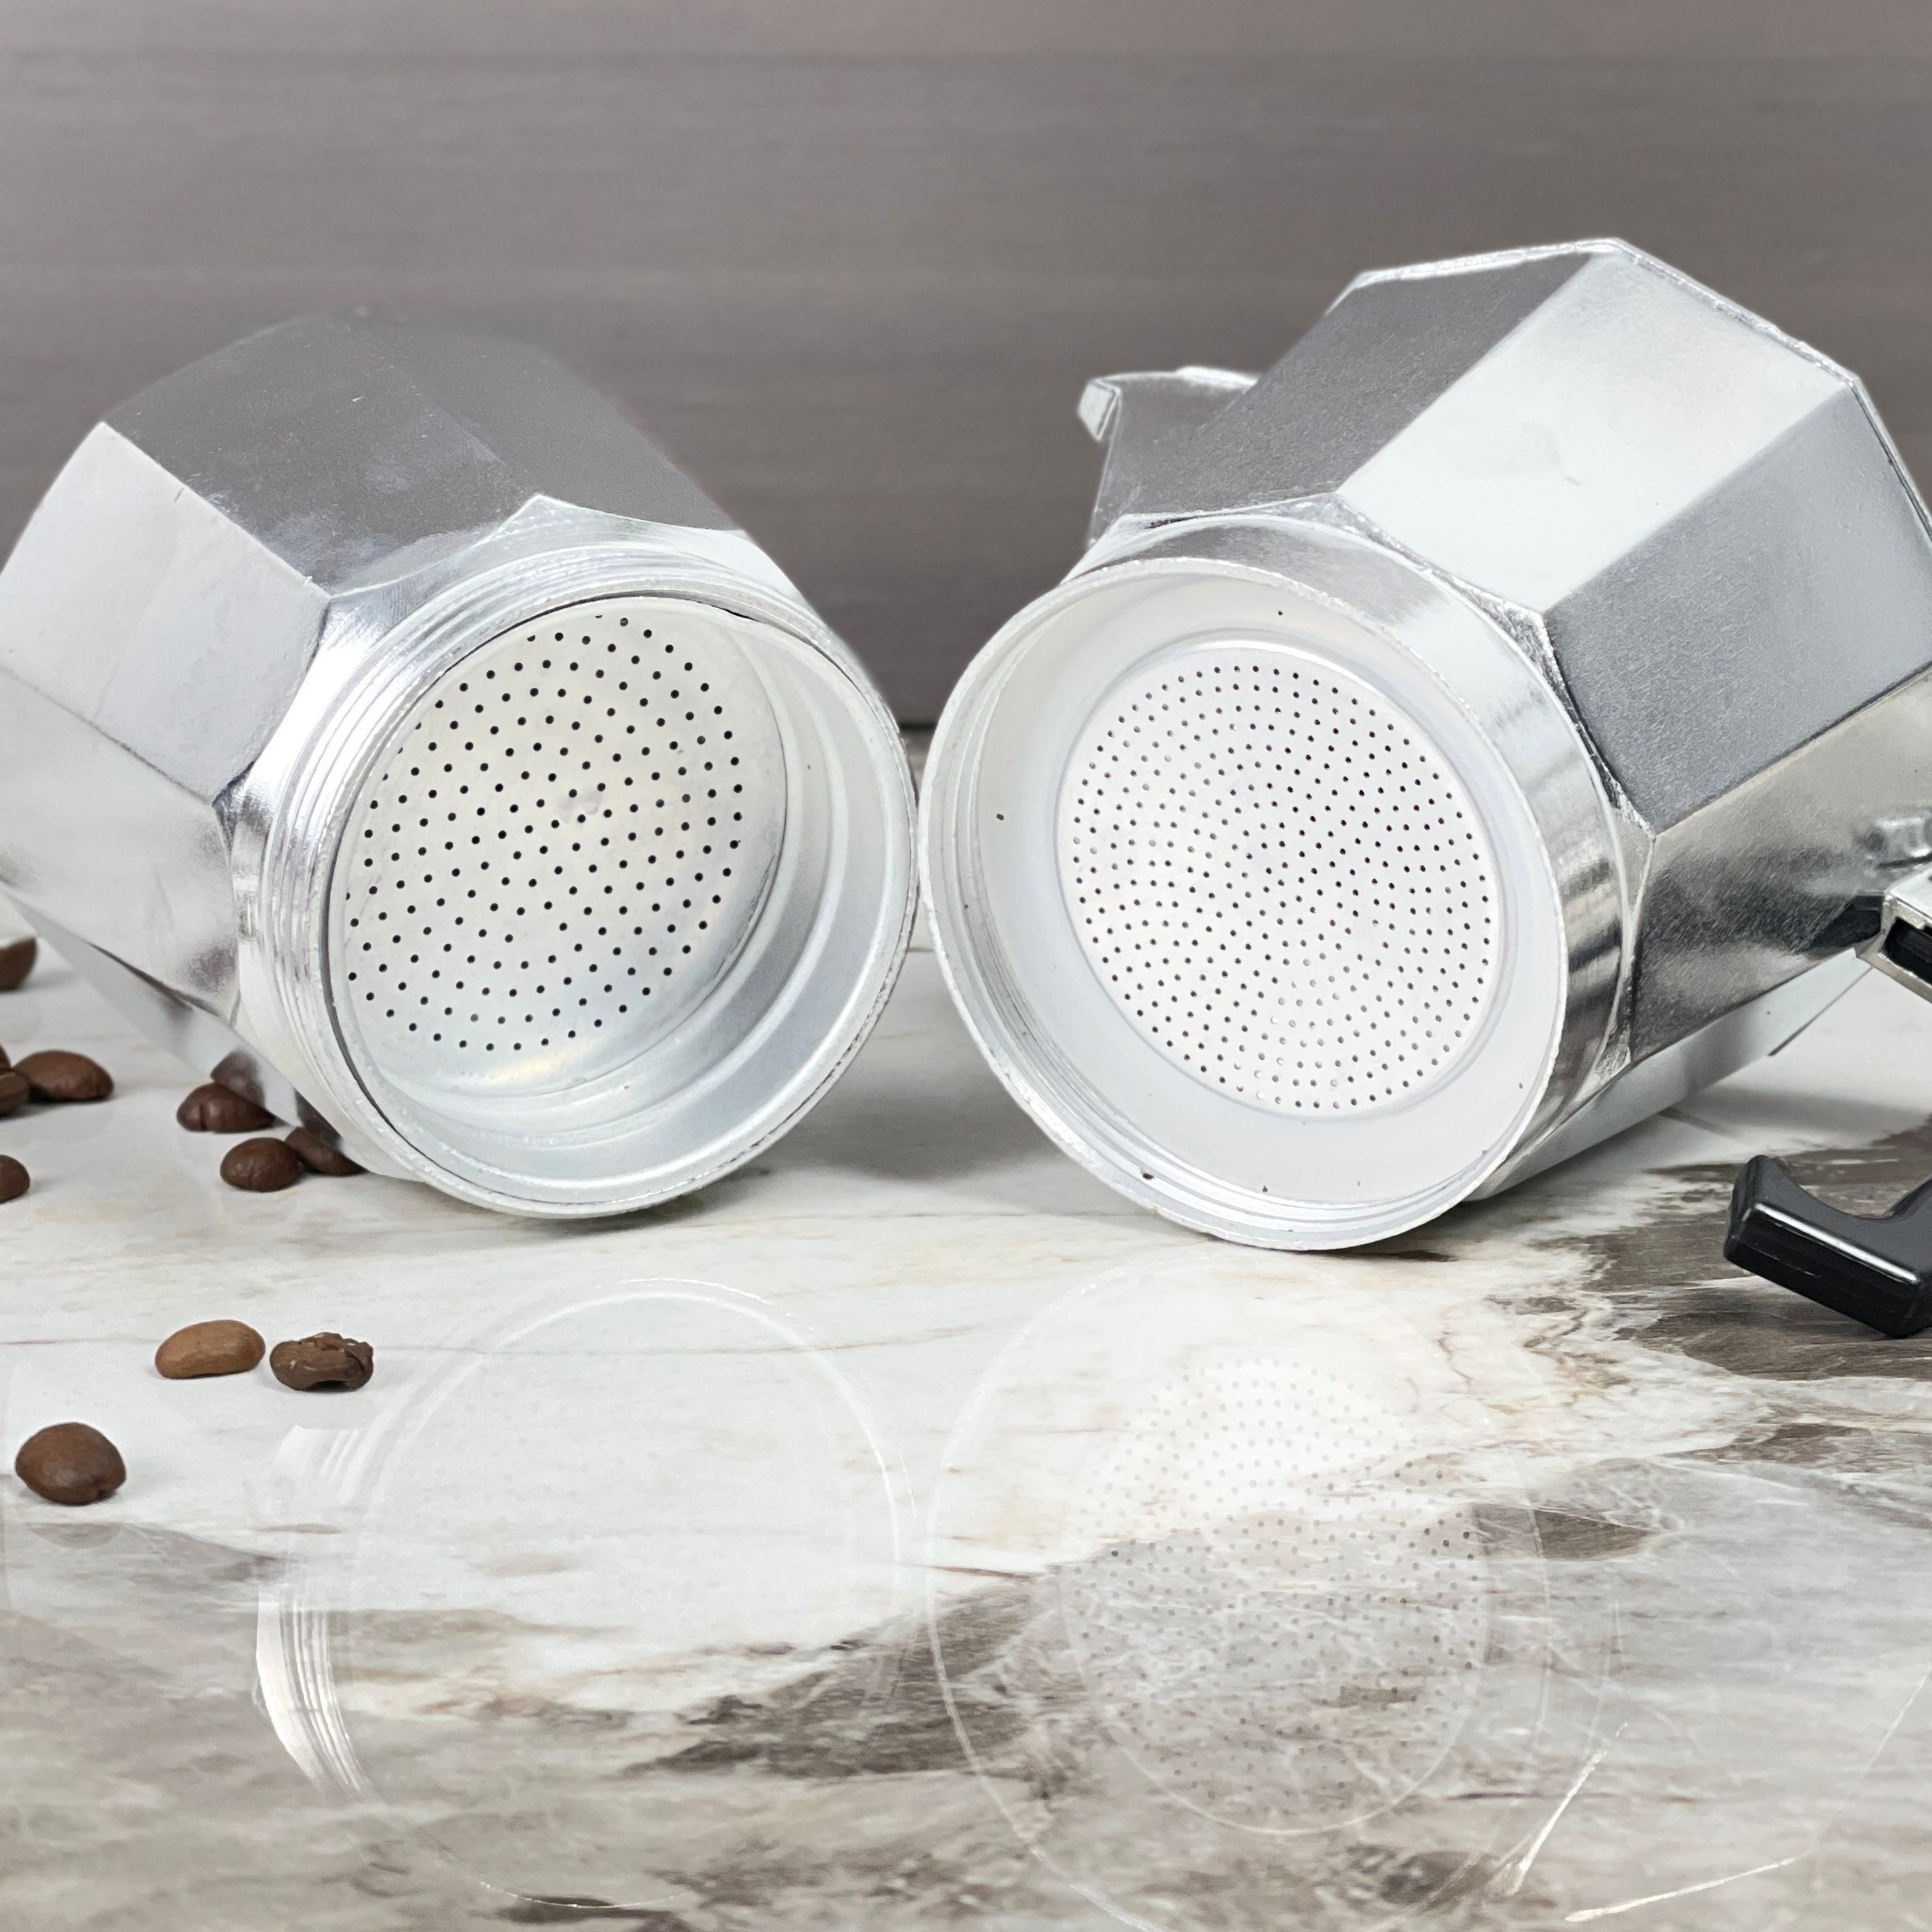 Italian Moka Pot 3 Cup Stovetop Aluminum Espresso Maker - Silver